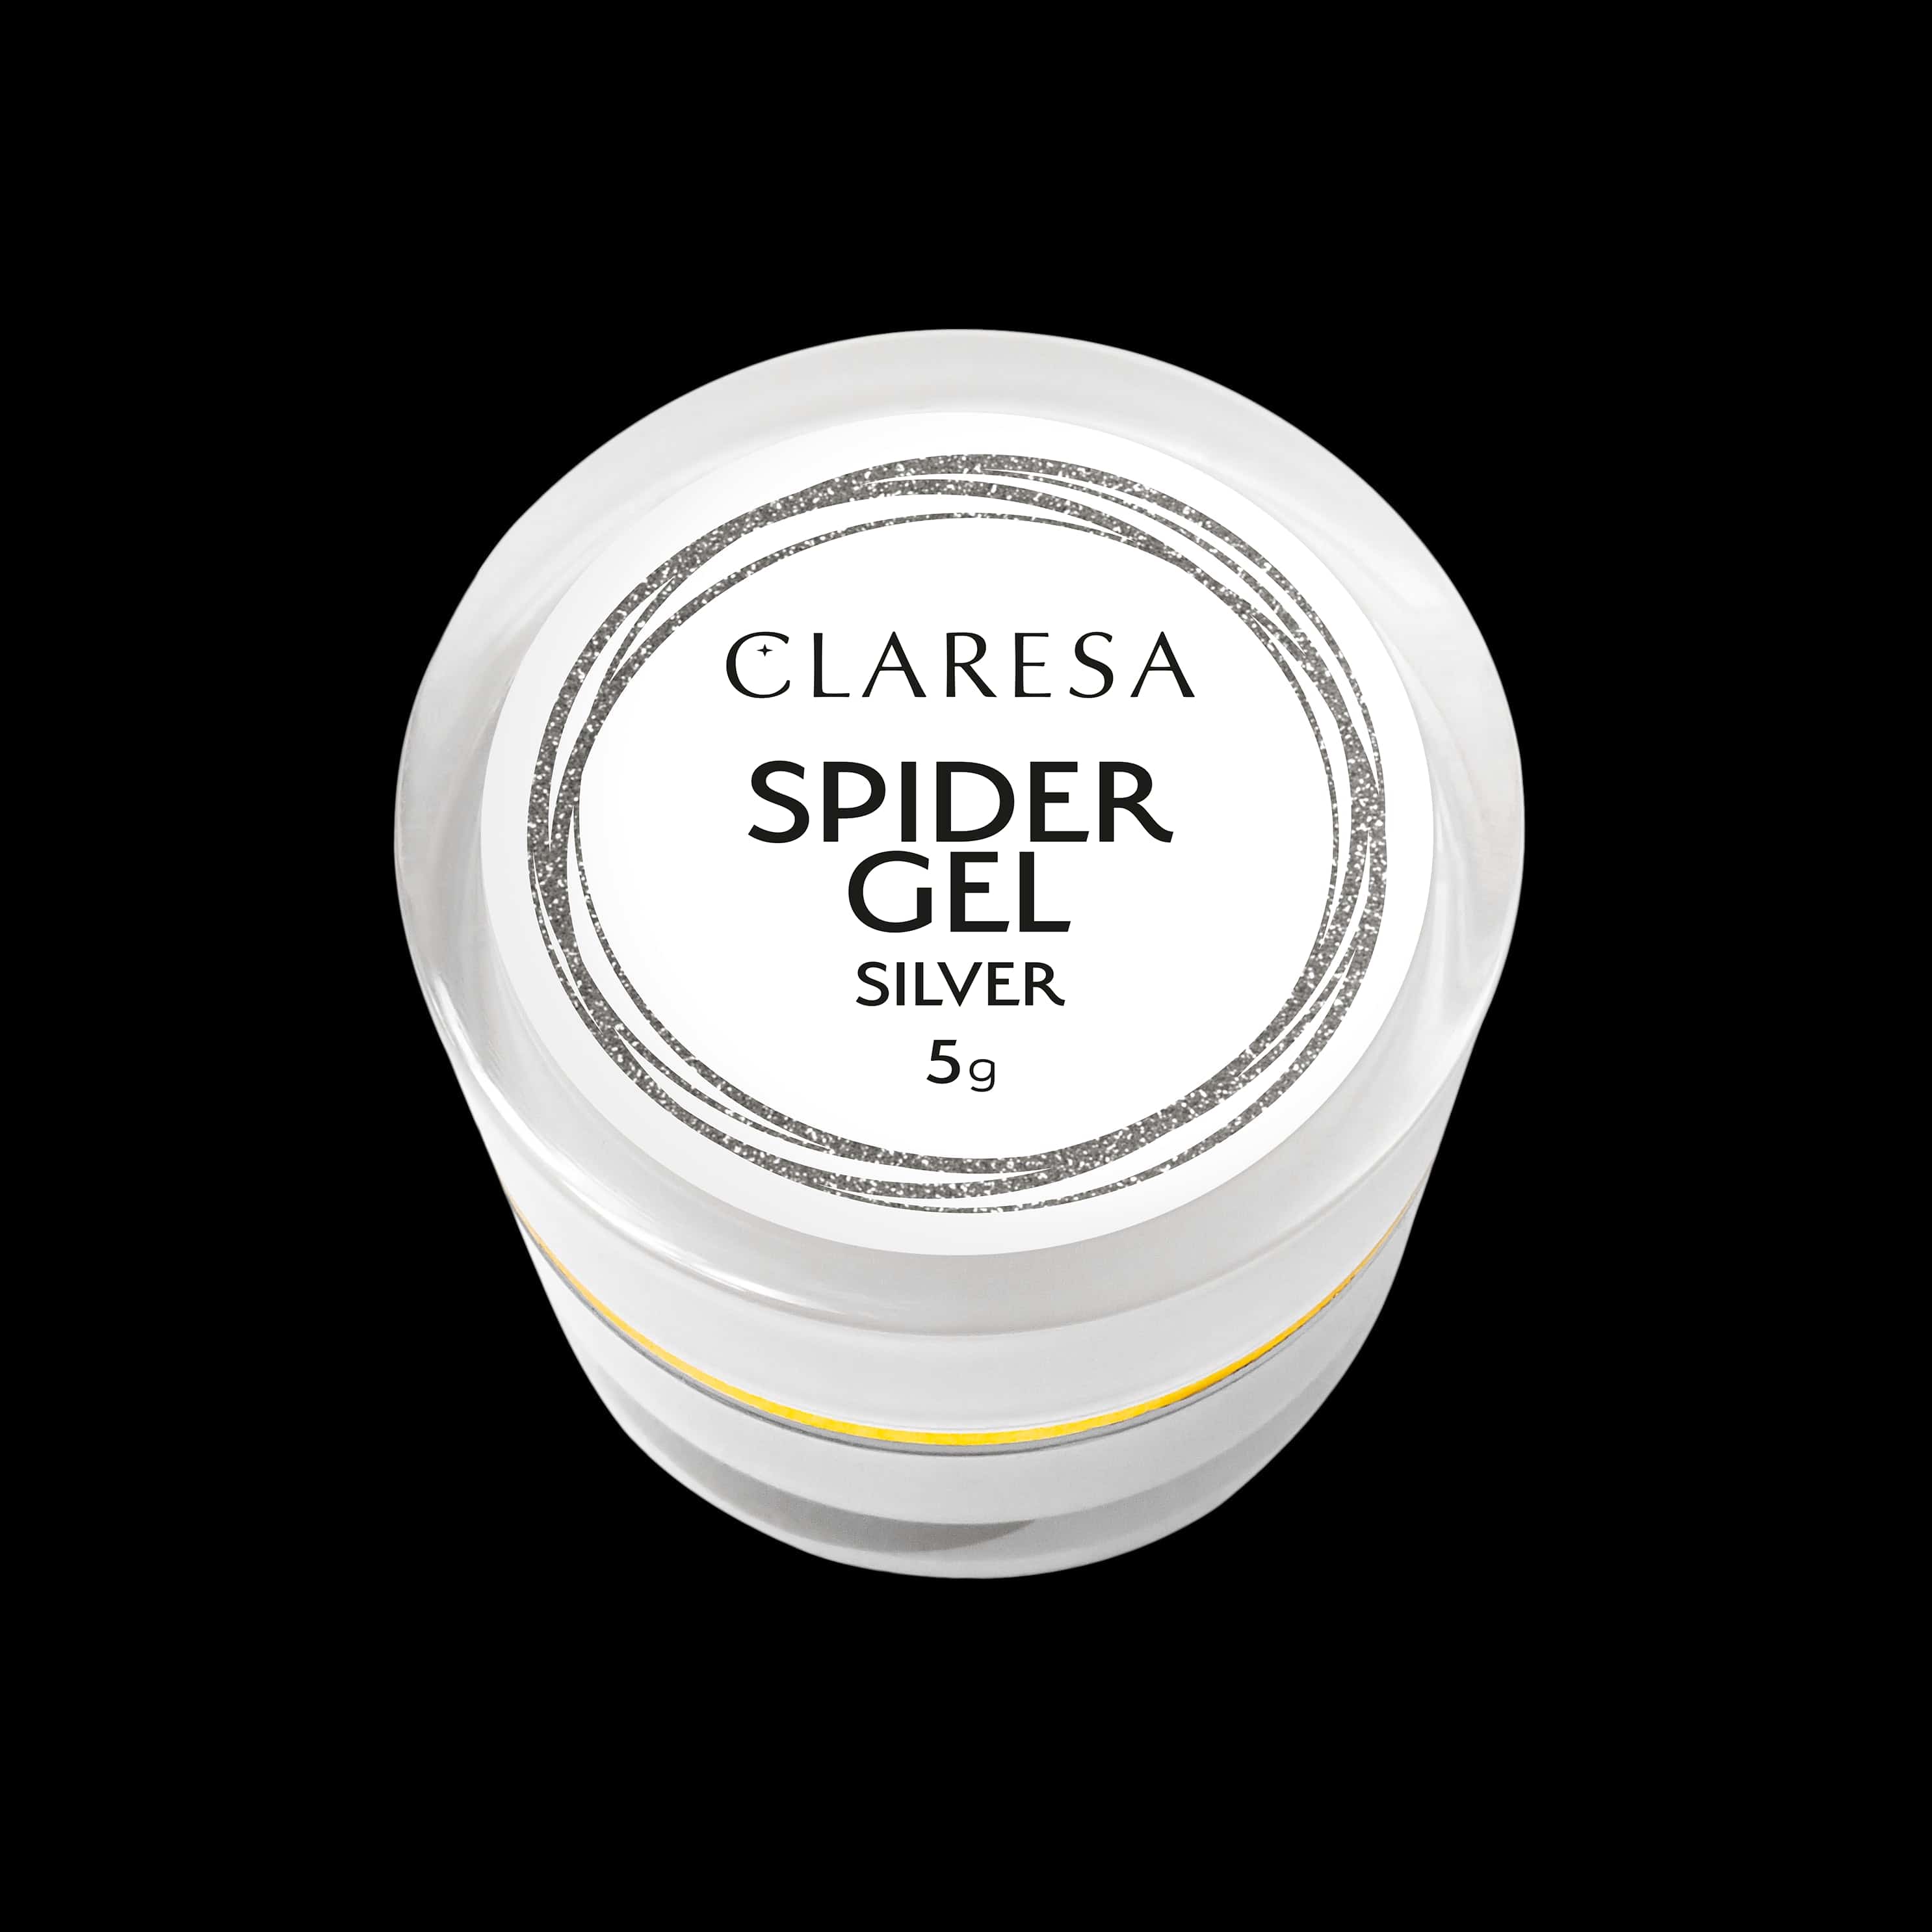 Claresa Spider Gel SILVER 5g